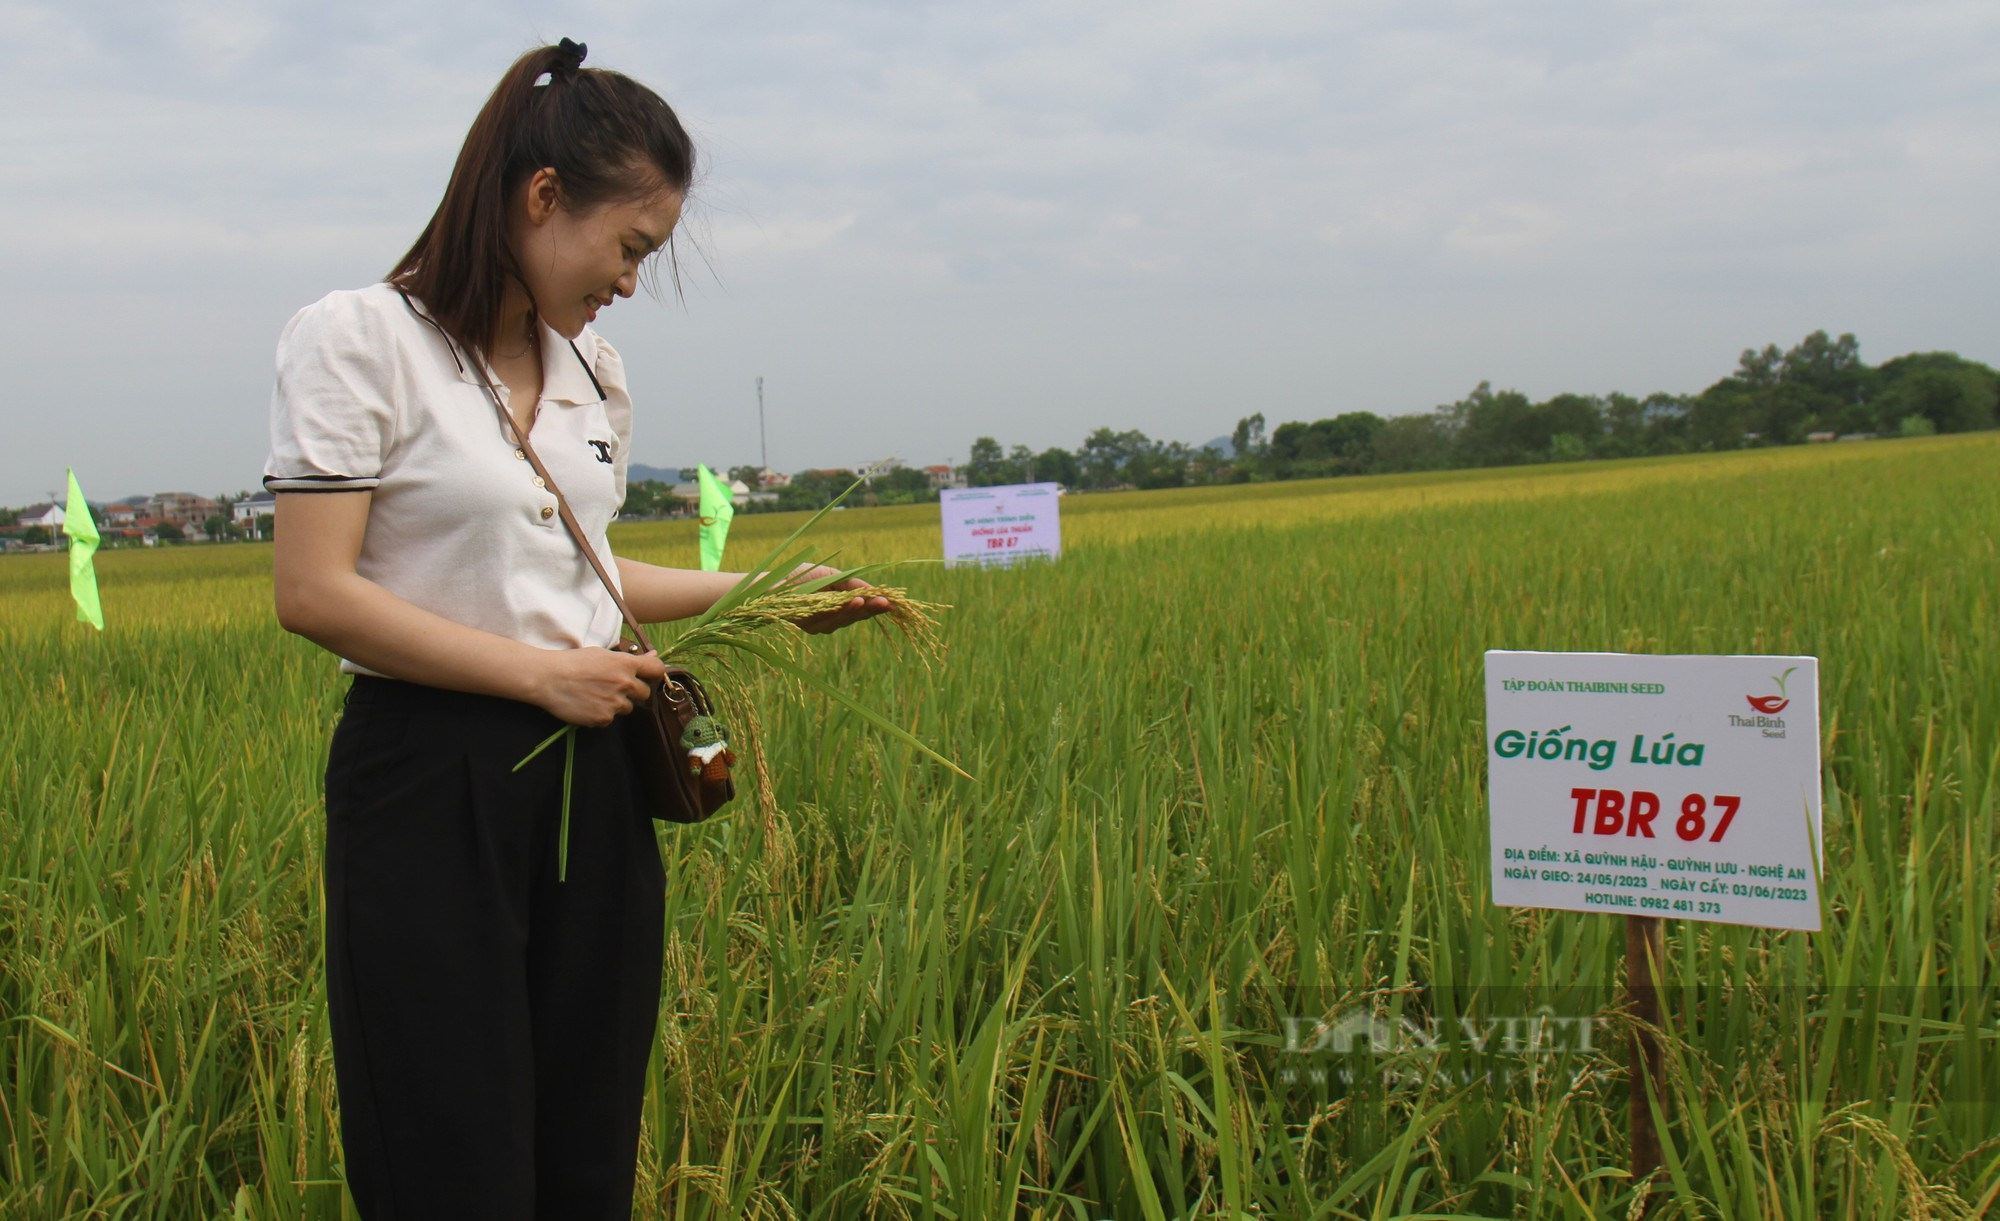 Bà con nông dân nơi này nô nức ra đồng ngắm những bông lúa TBR 87 dài, to, nặng trĩu của ThaiBinh Seed - Ảnh 8.